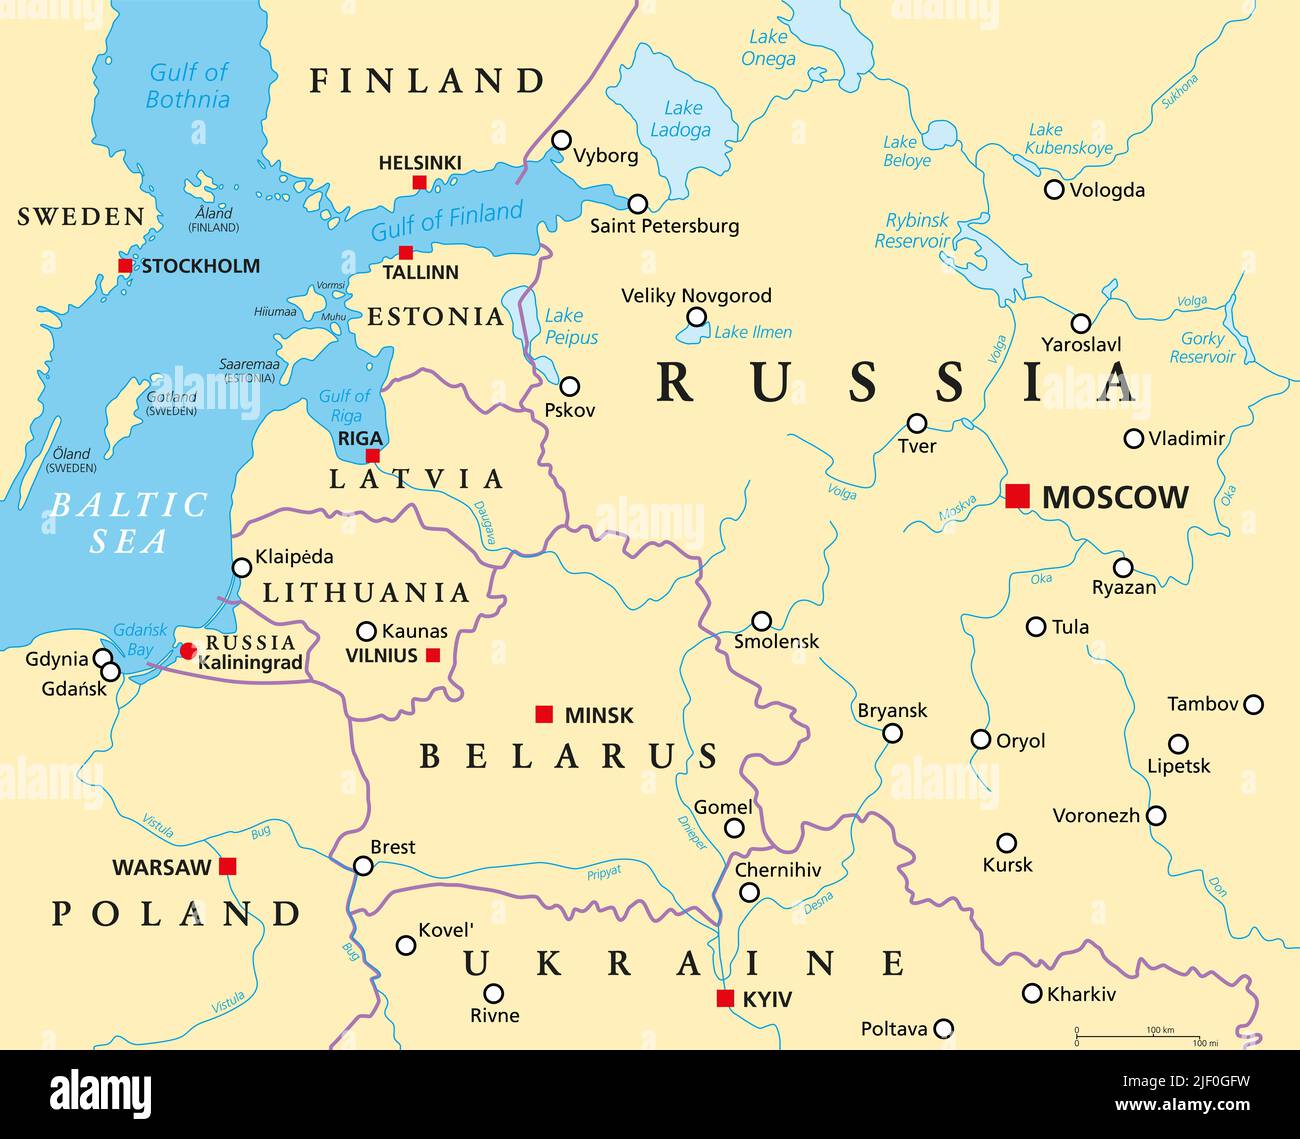 Etats baltes et Kaliningrad, carte politique. De la Finlande à l'Estonie, de la Lettonie et de la Lituanie à la Pologne, de l'exclave russe Kaliningrad à Moscou. Banque D'Images